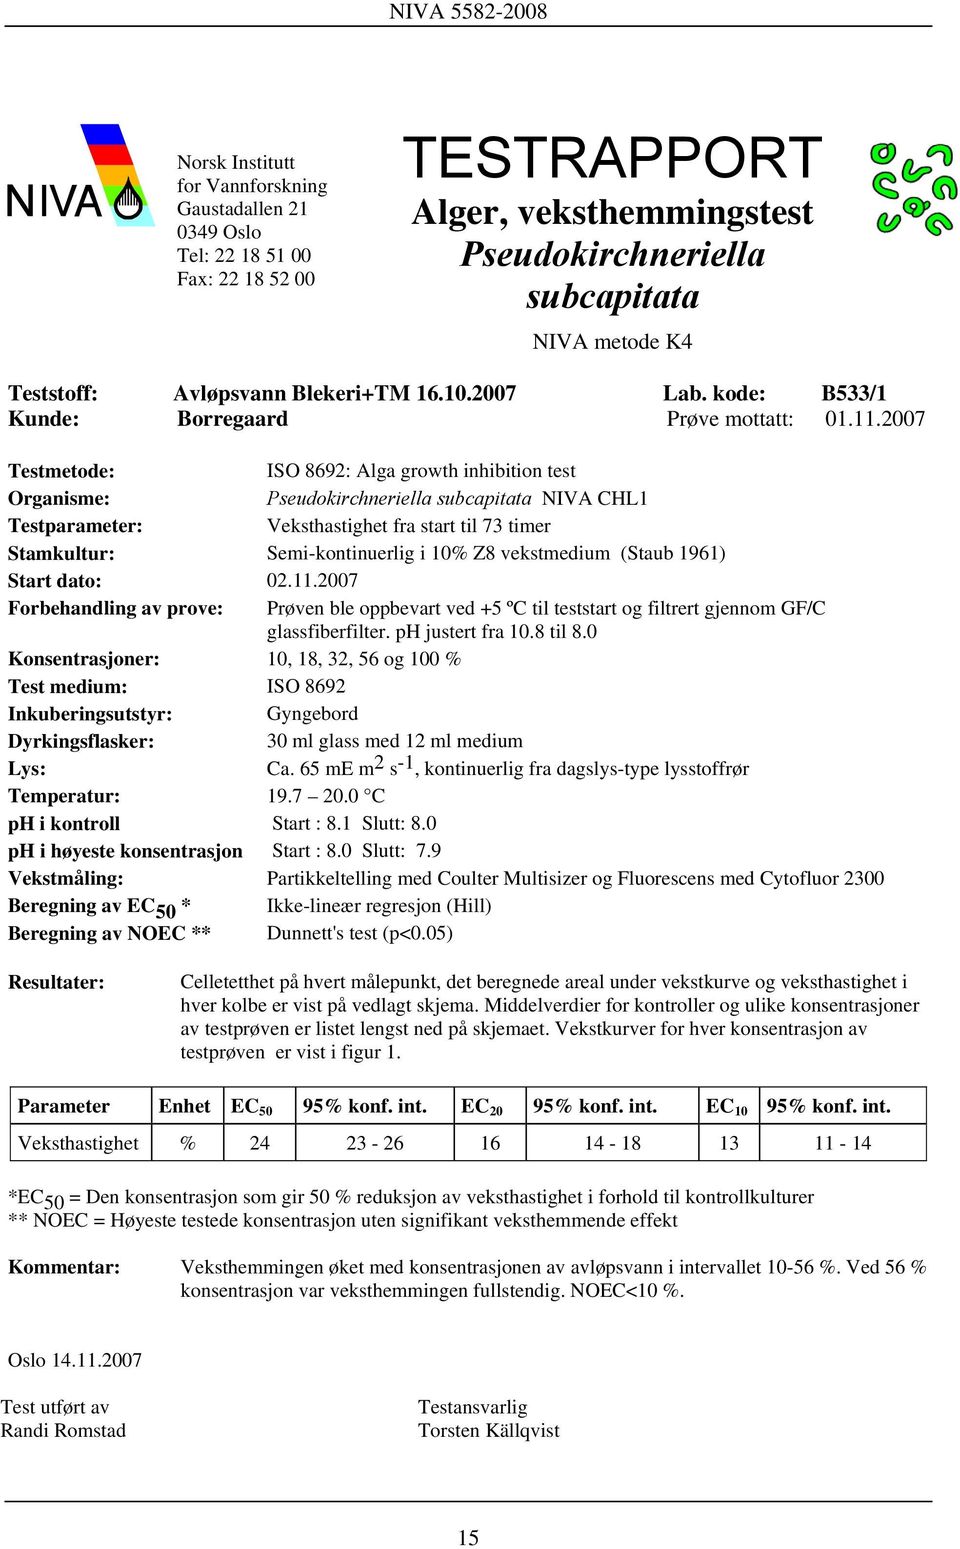 2007 Testmetode: ISO 8692: Alga growth inhibition test Organisme: Pseudokirchneriella subcapitata NIVA CHL1 Testparameter: Veksthastighet fra start til 73 timer Stamkultur: Semi-kontinuerlig i 10% Z8